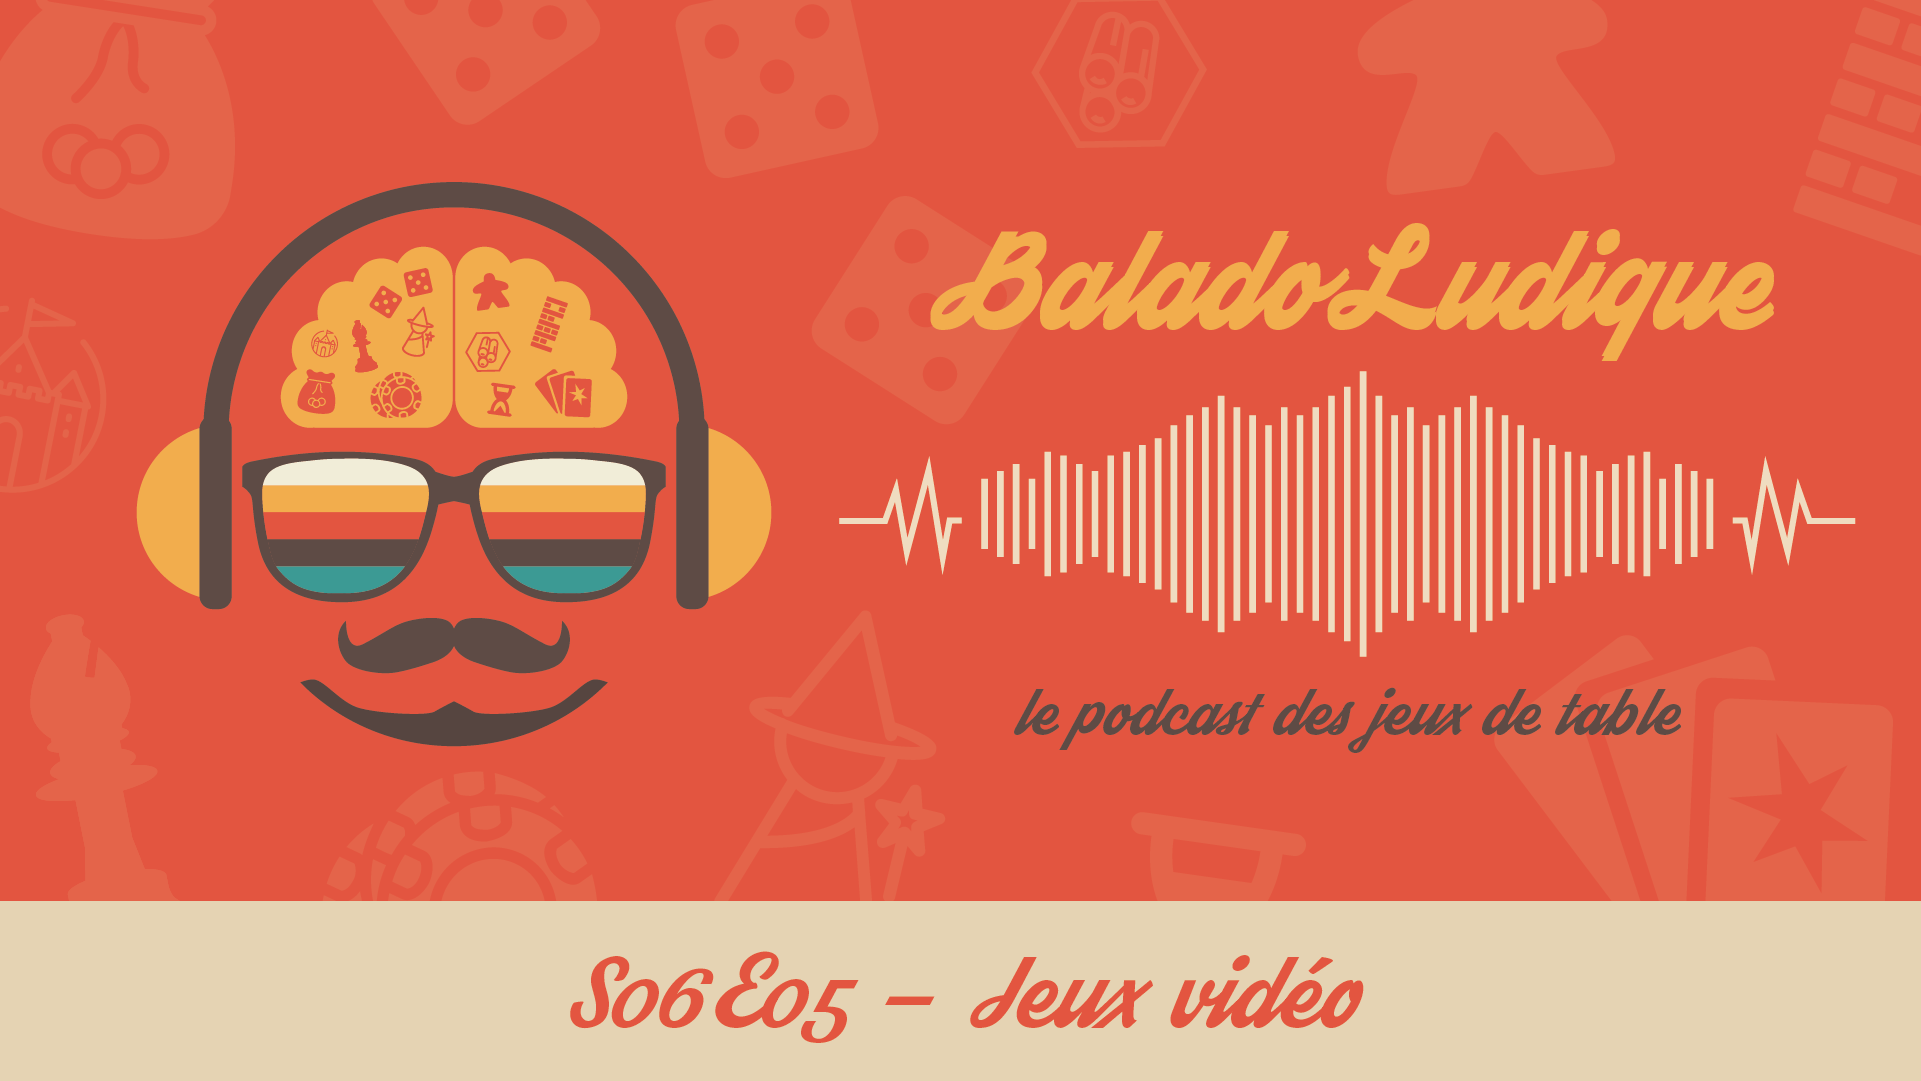 Jeux vidéo - BaladoLudique - s06-e05